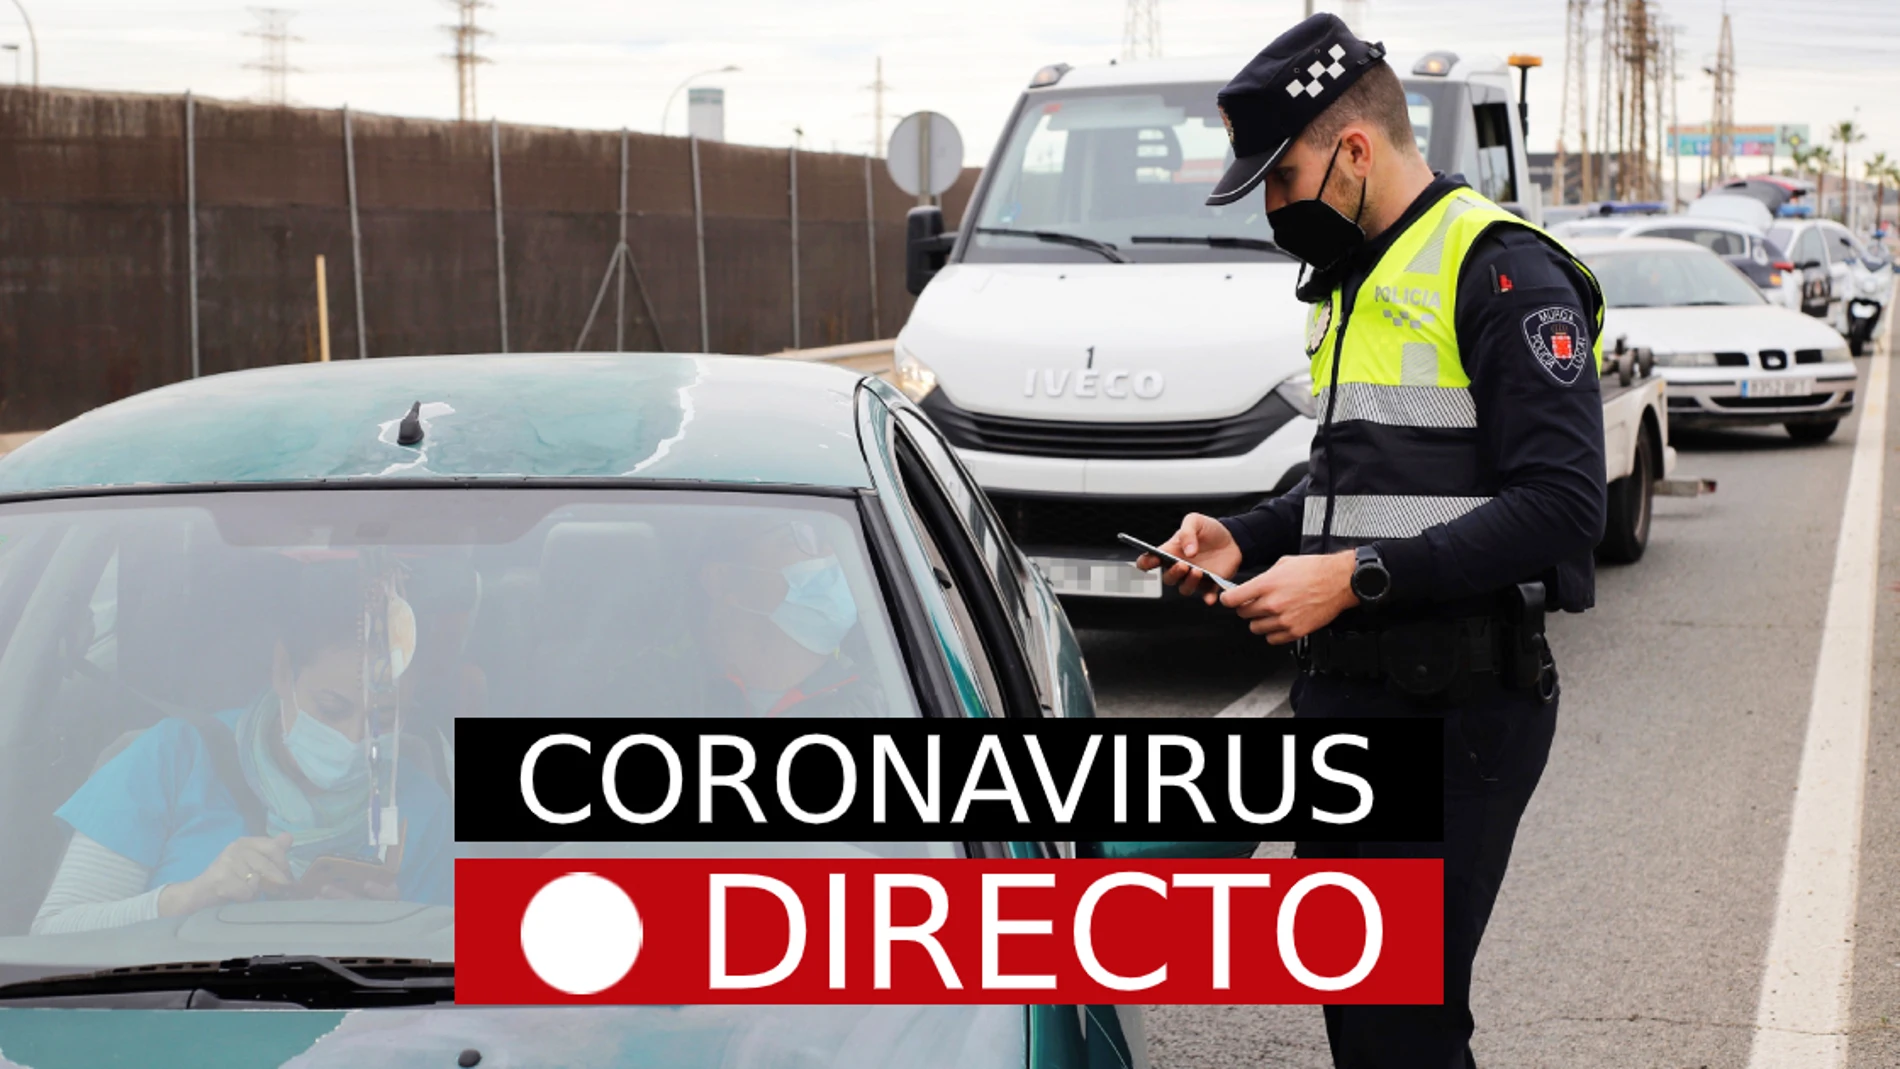 Restricciones por COVID-19, hoy | Nuevas medidas por coronavirus y confinamiento en Madrid y España, en directo